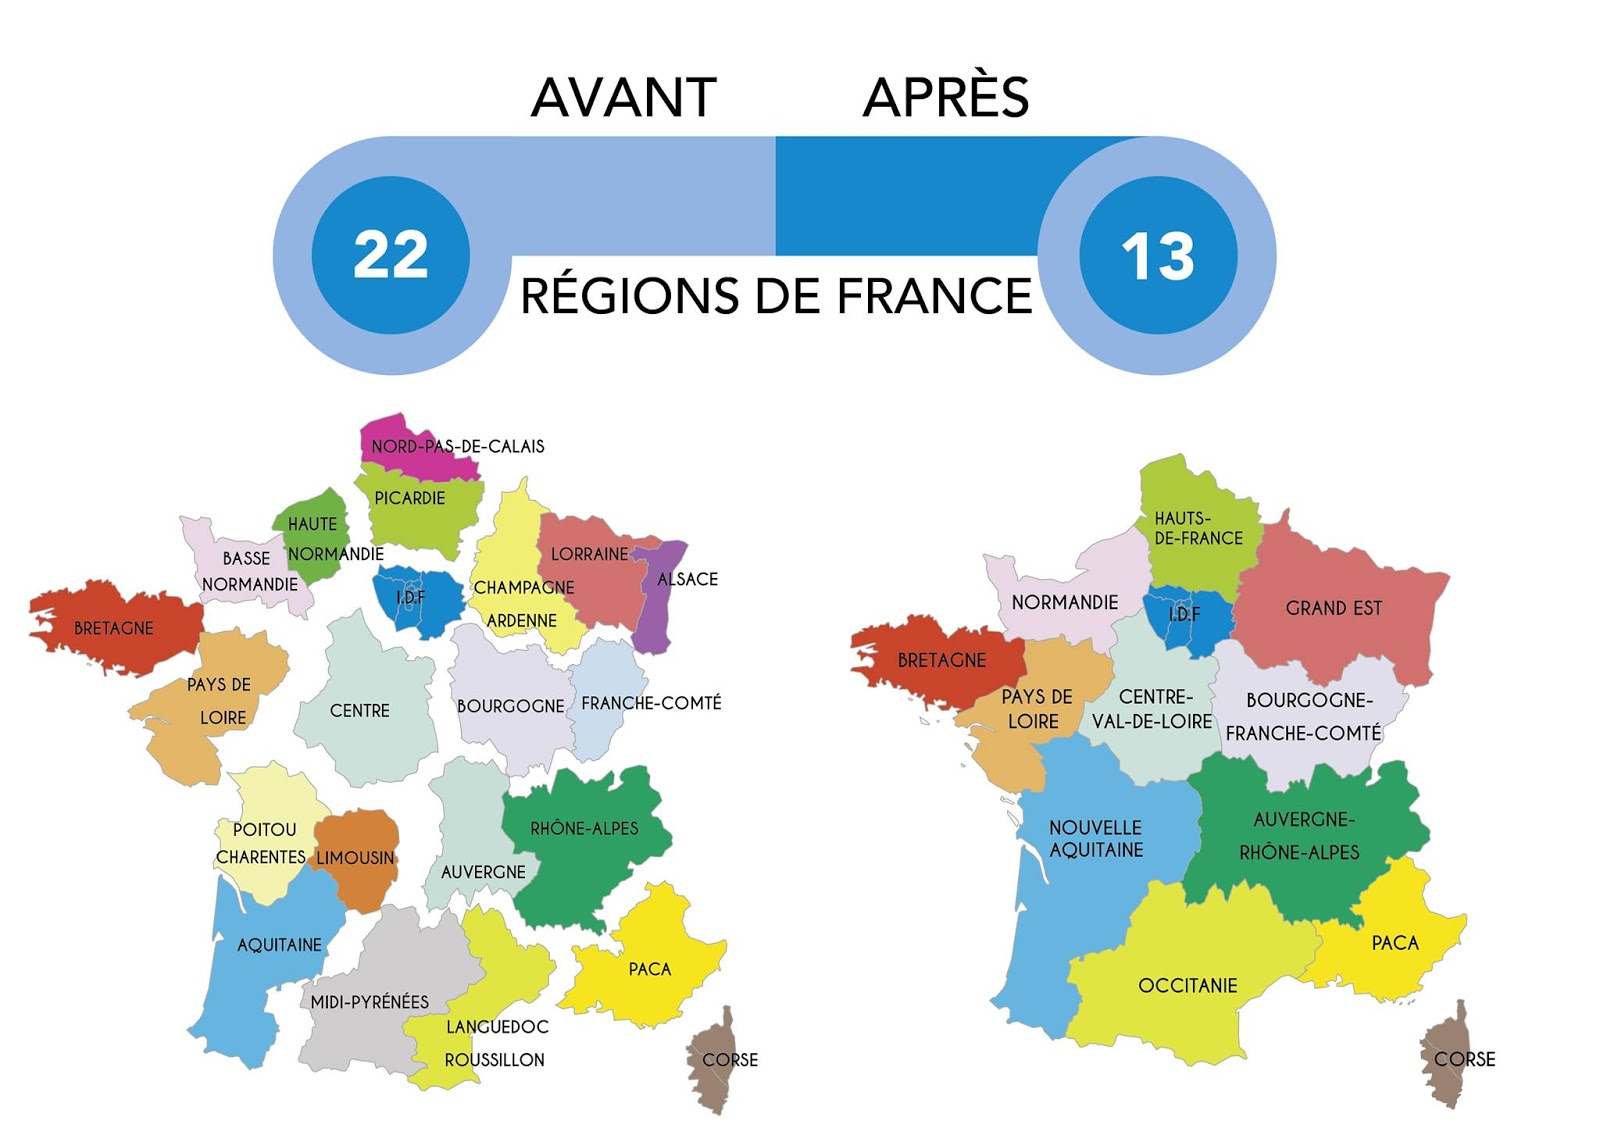 regions-de-france-avant-et-apres